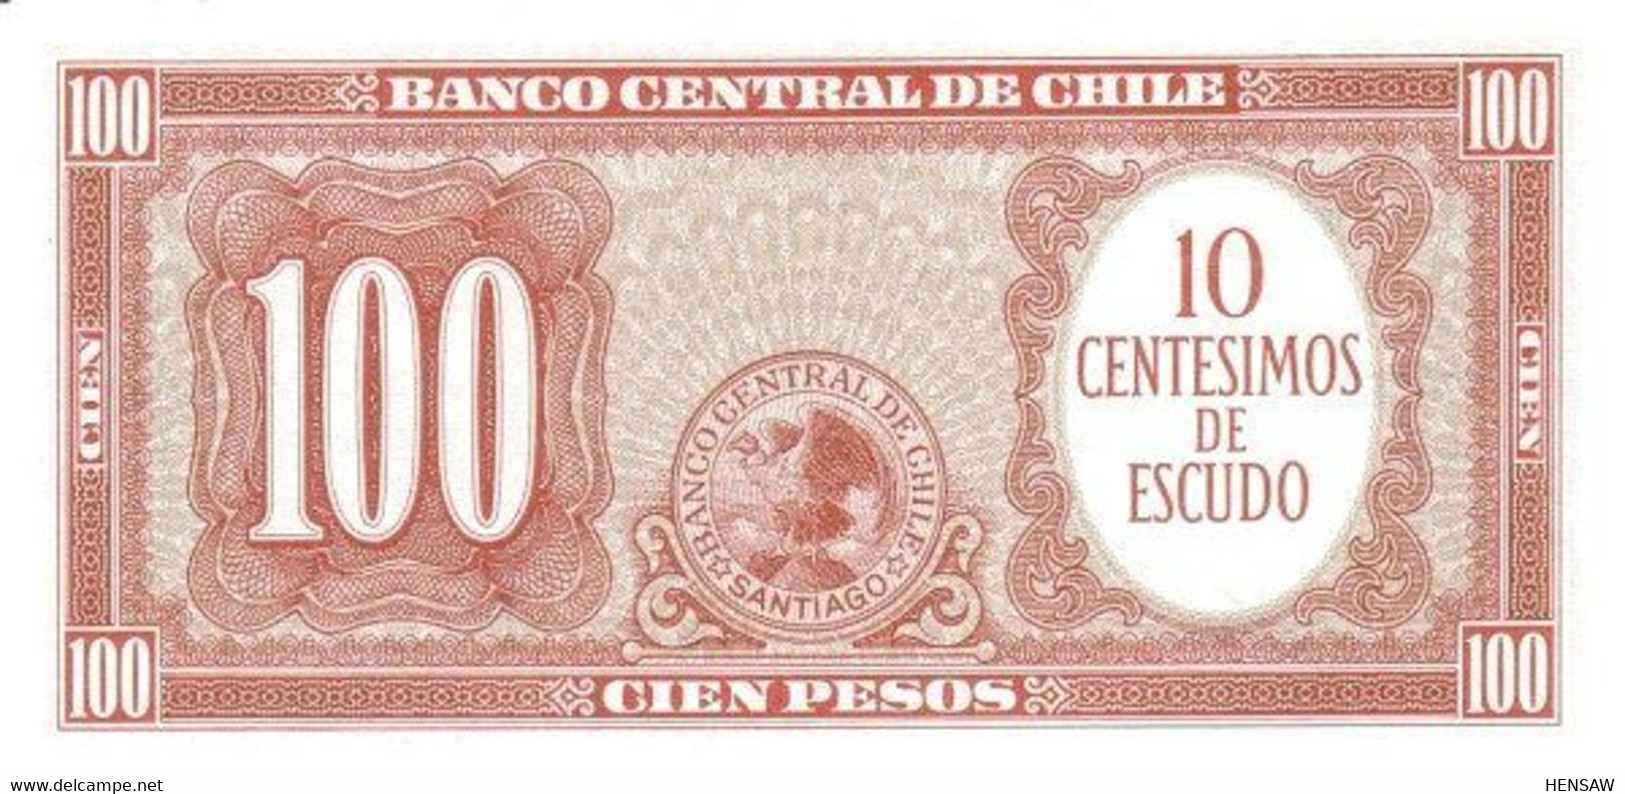 CHILE 100 PESOS P 127 1960 UNC SC NUEVO - Chile